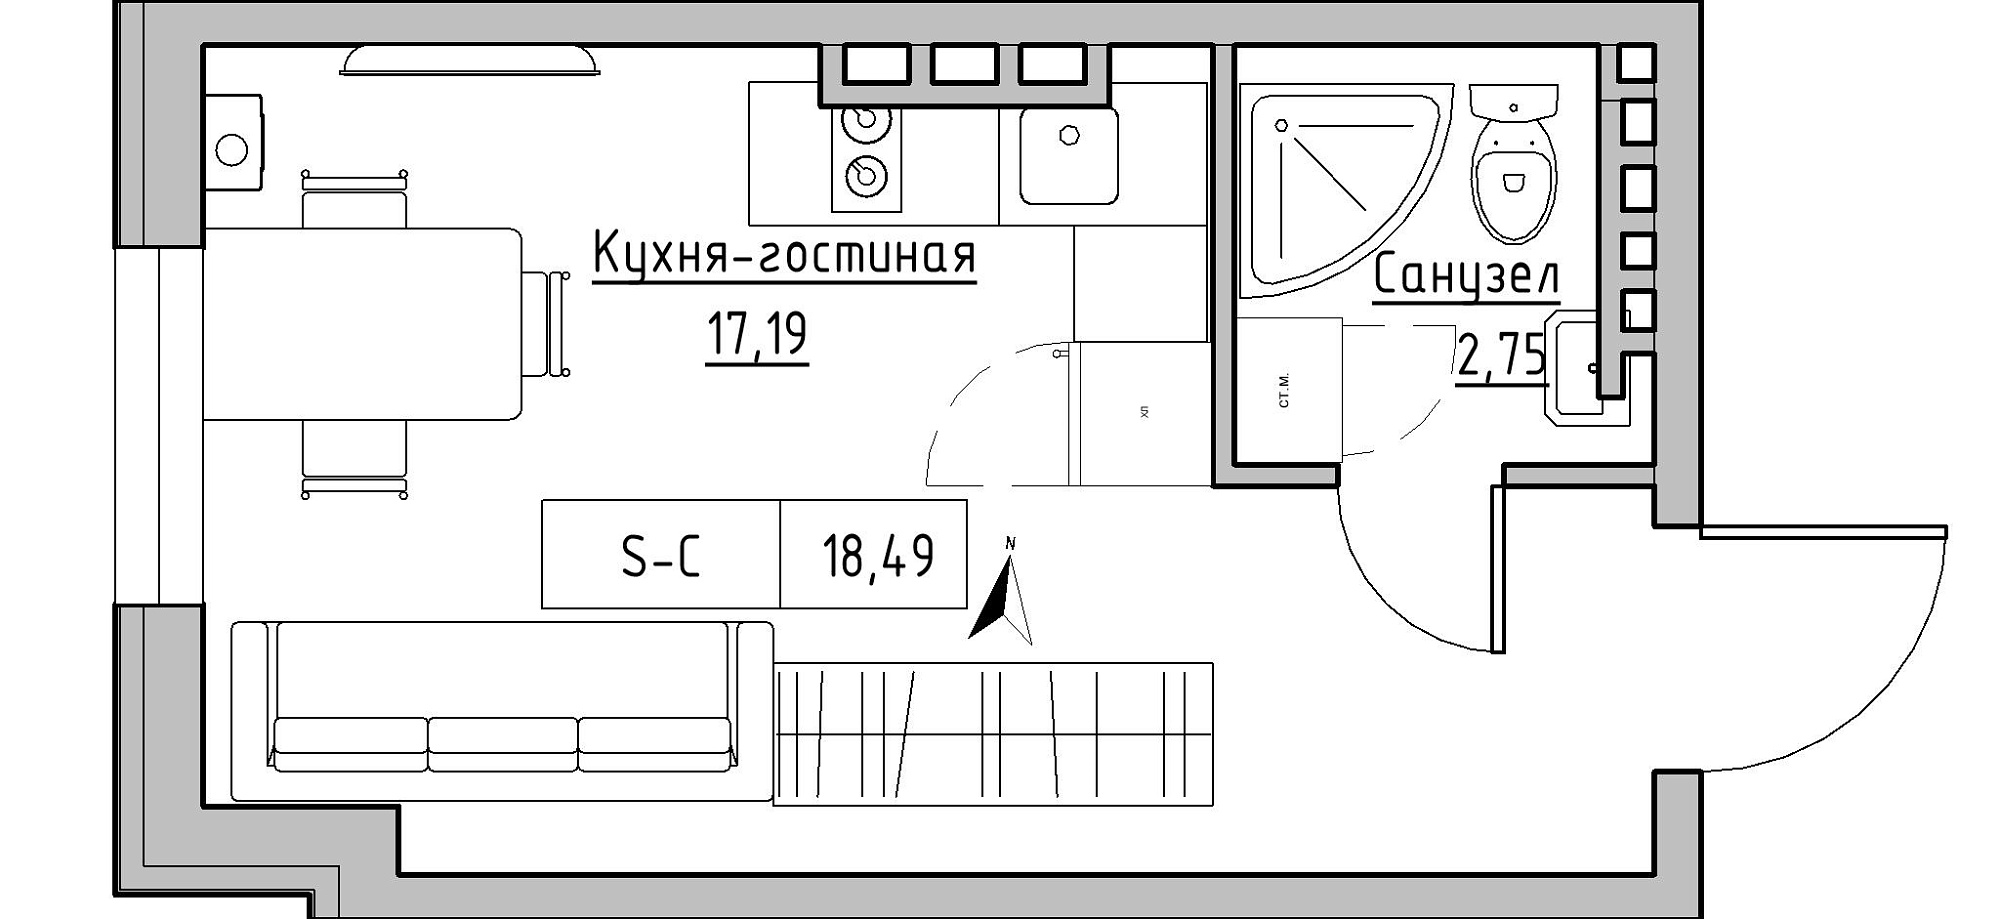 Планування Smart-квартира площею 18.49м2, KS-024-05/0014.